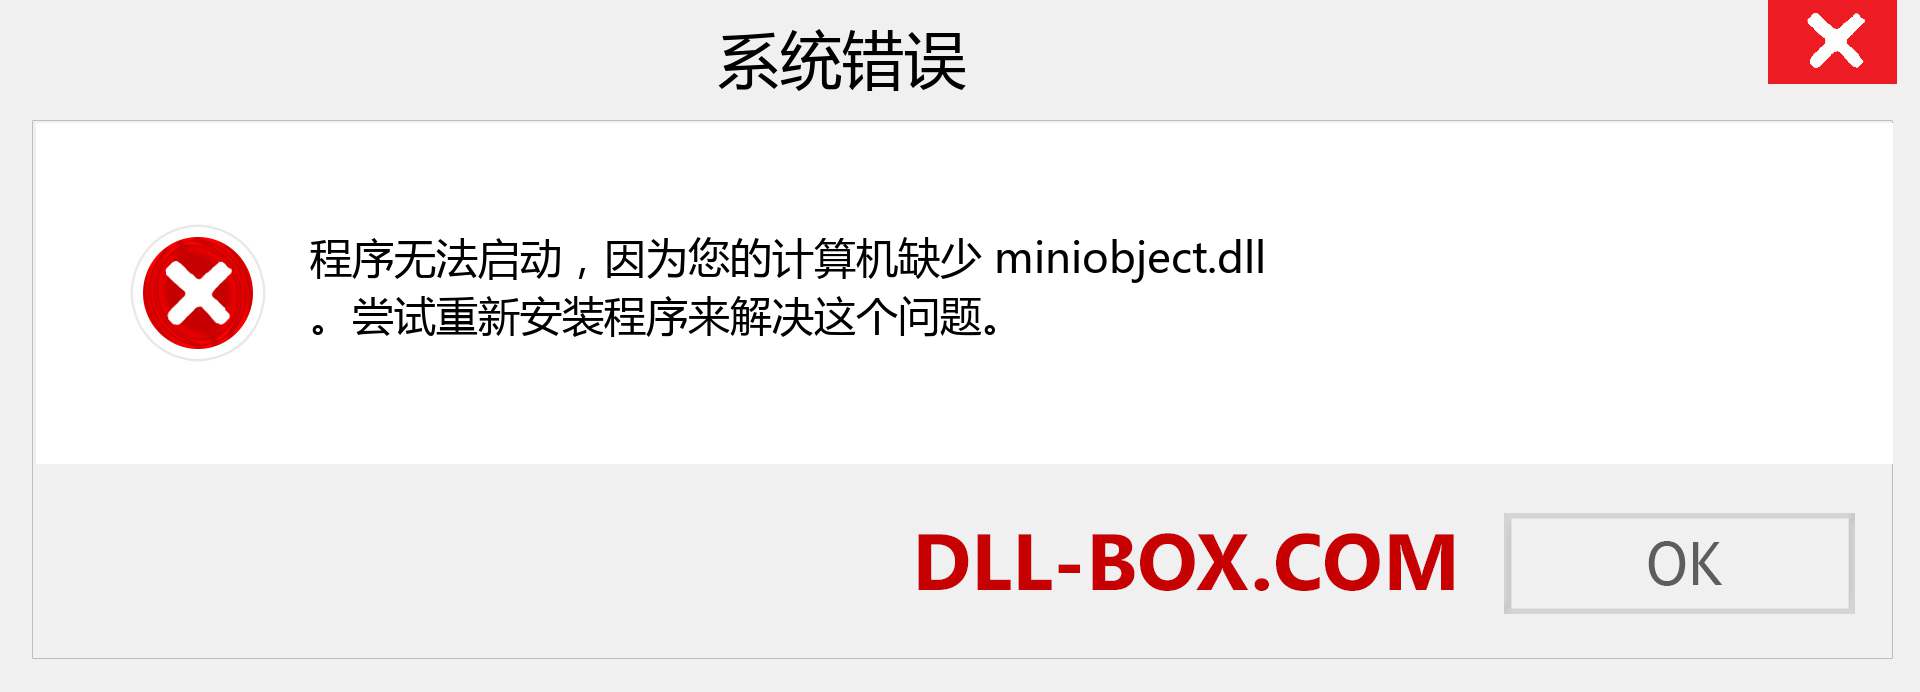 miniobject.dll 文件丢失？。 适用于 Windows 7、8、10 的下载 - 修复 Windows、照片、图像上的 miniobject dll 丢失错误